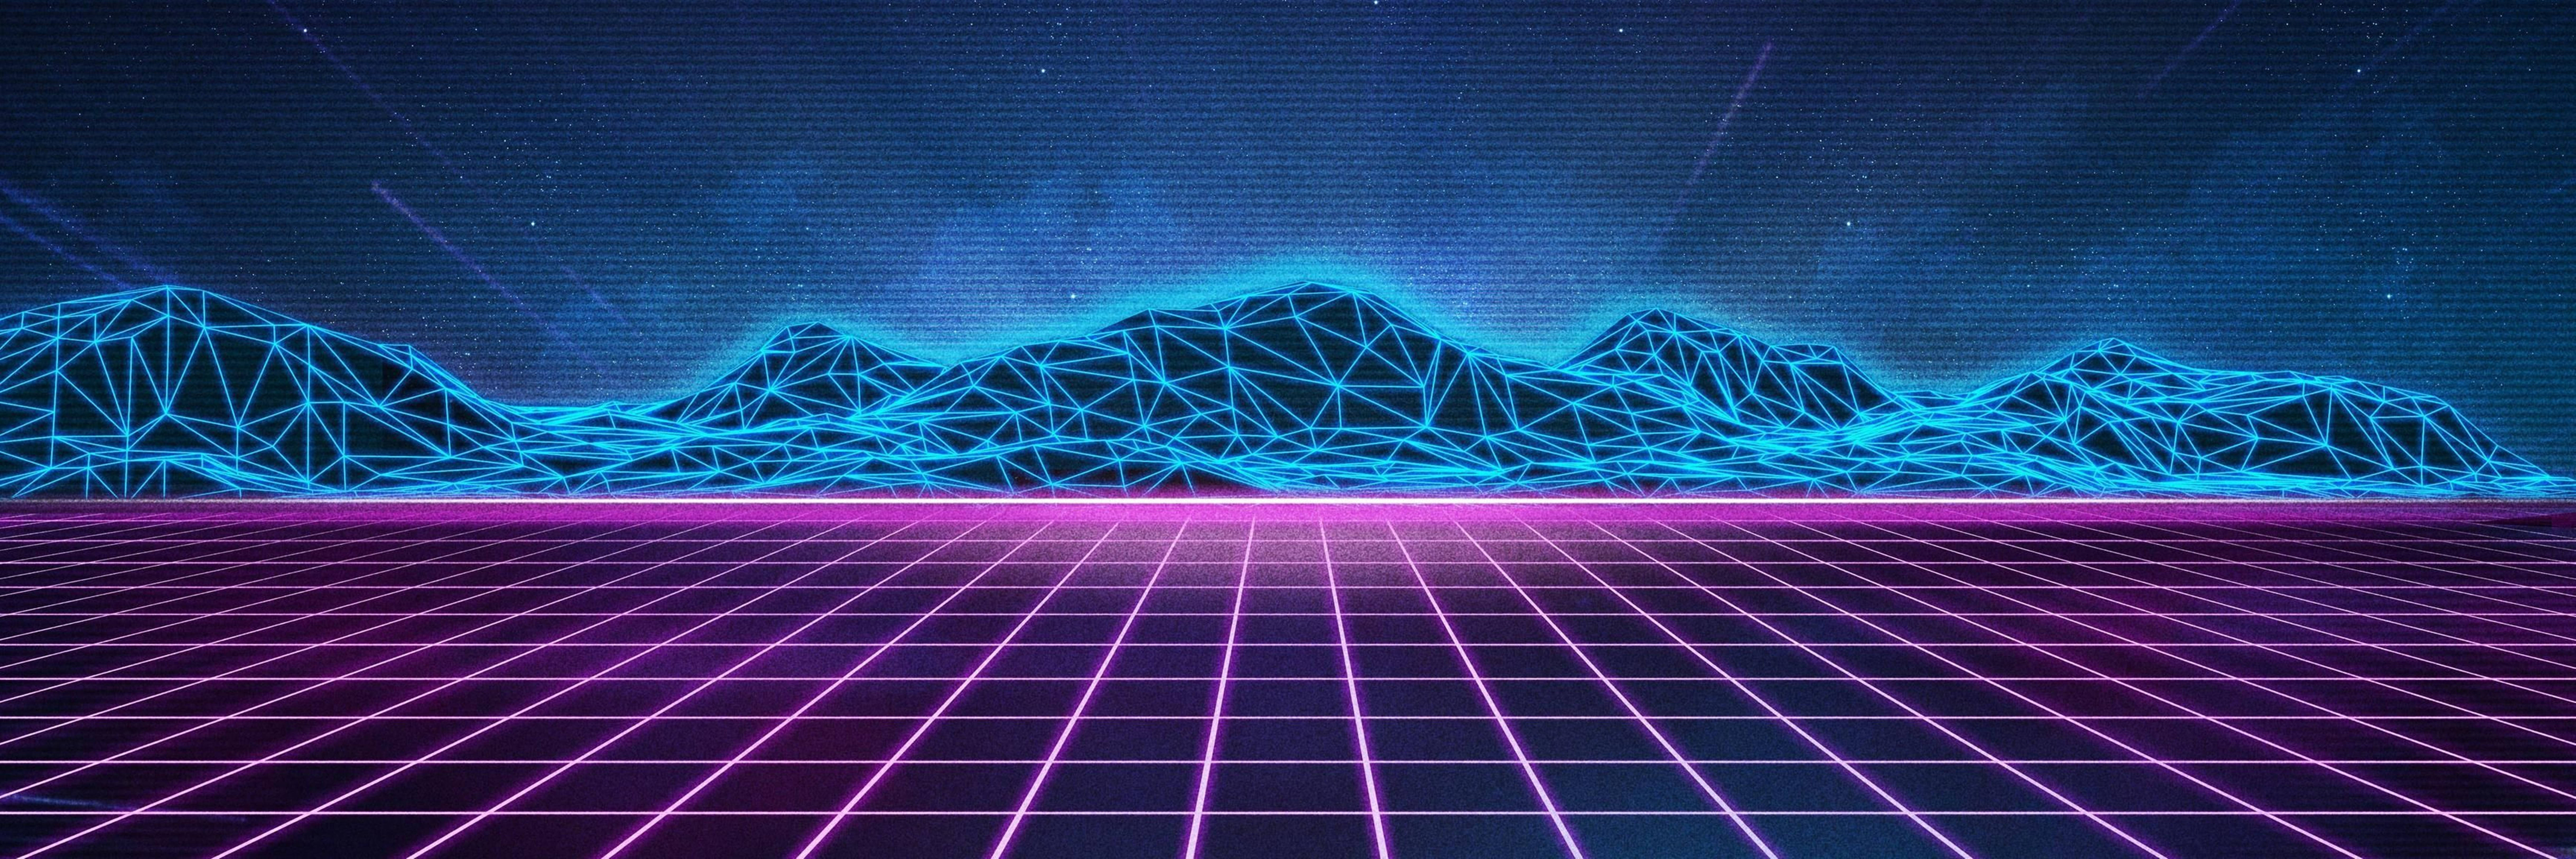 Retro Neon Grid Field Blue Mountains 4K Wallpaper